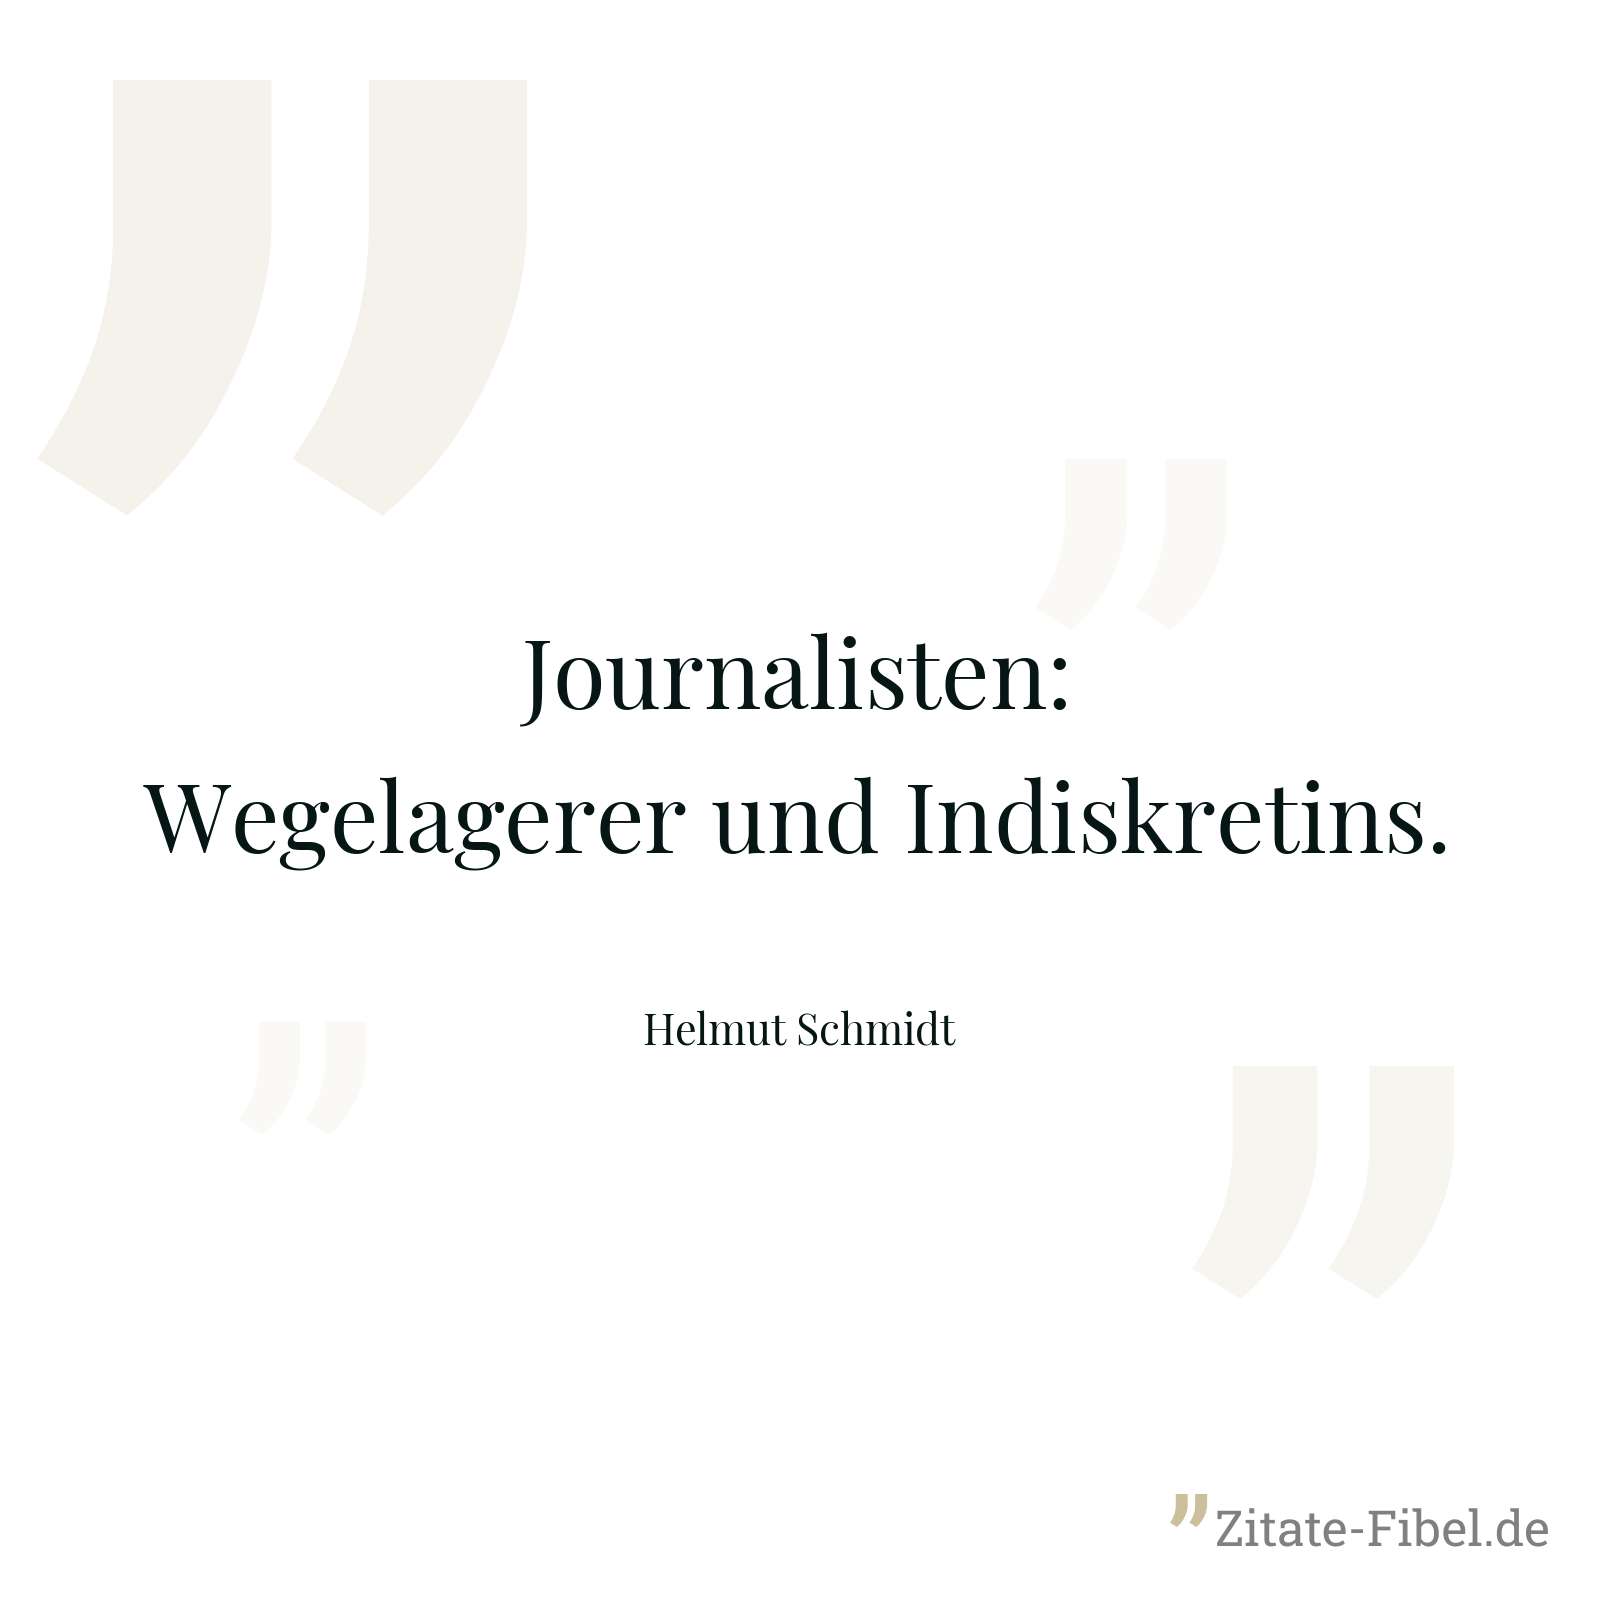 Journalisten: Wegelagerer und Indiskretins. - Helmut Schmidt